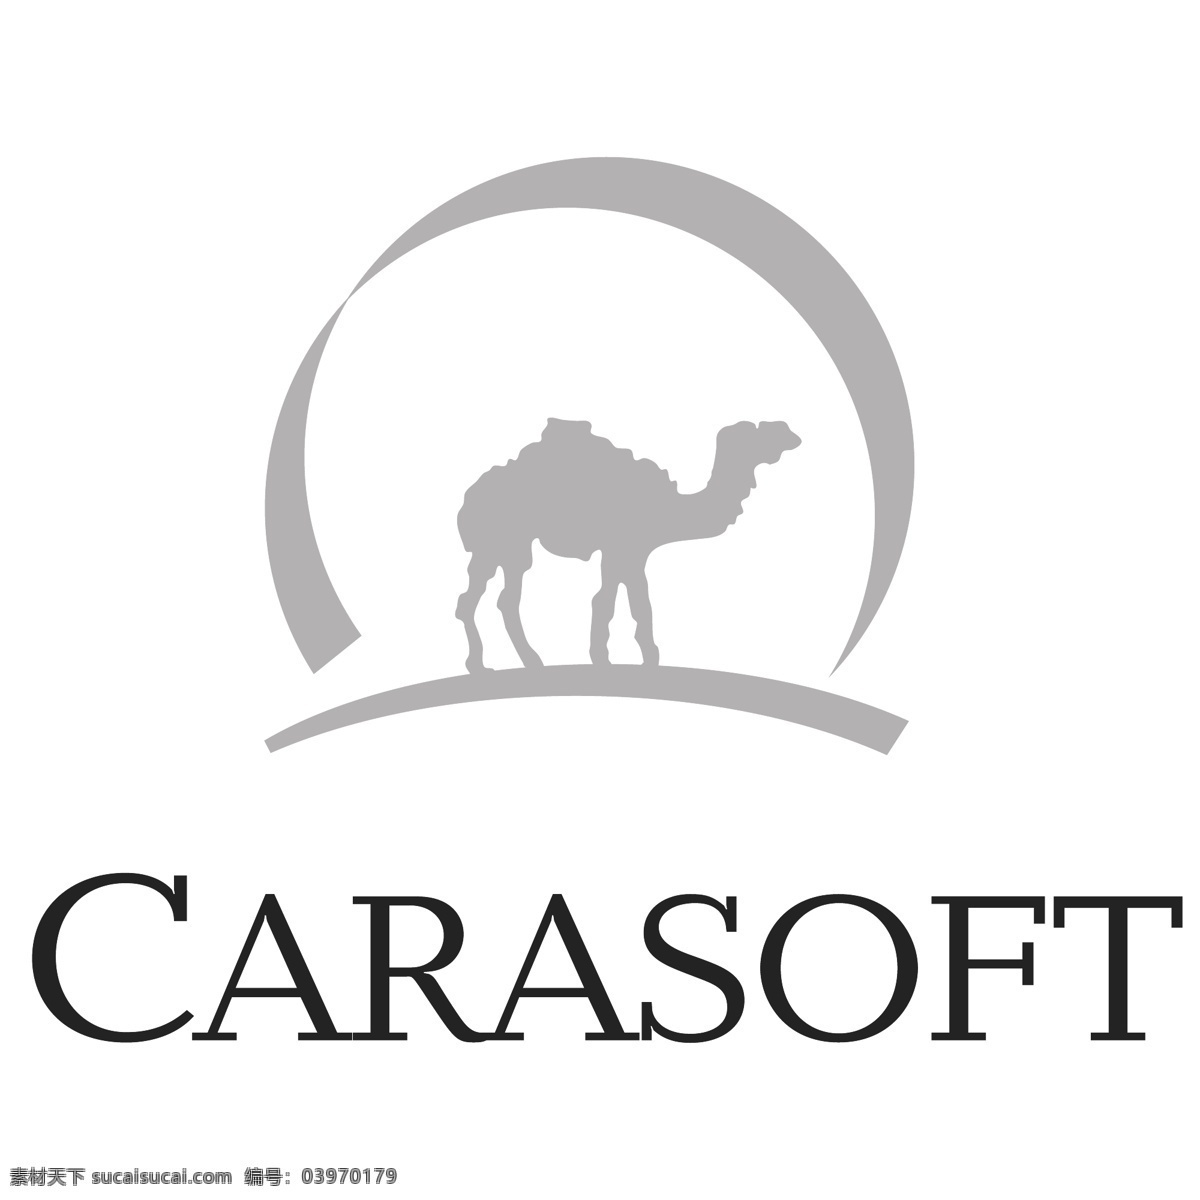 骆驼 创意 logo 简约 时尚 英文 典雅 抽象 白色